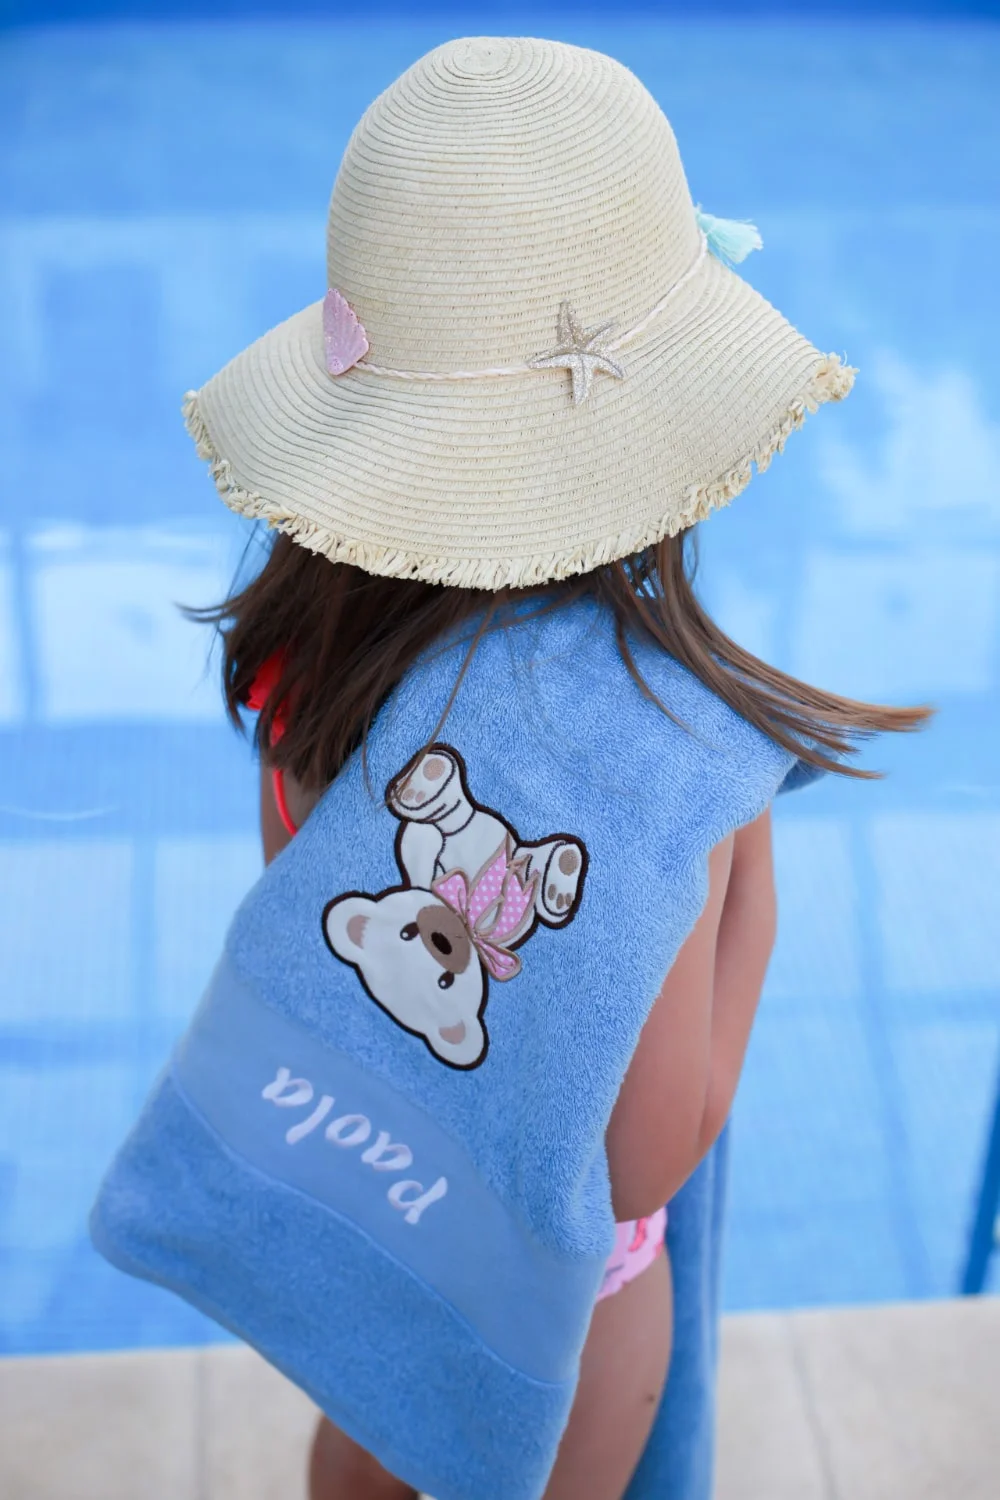 Djevojčica s ponosom pokazuje svoj personalizirani ručnik, s živopisnim dizajnom i svojim imenom.